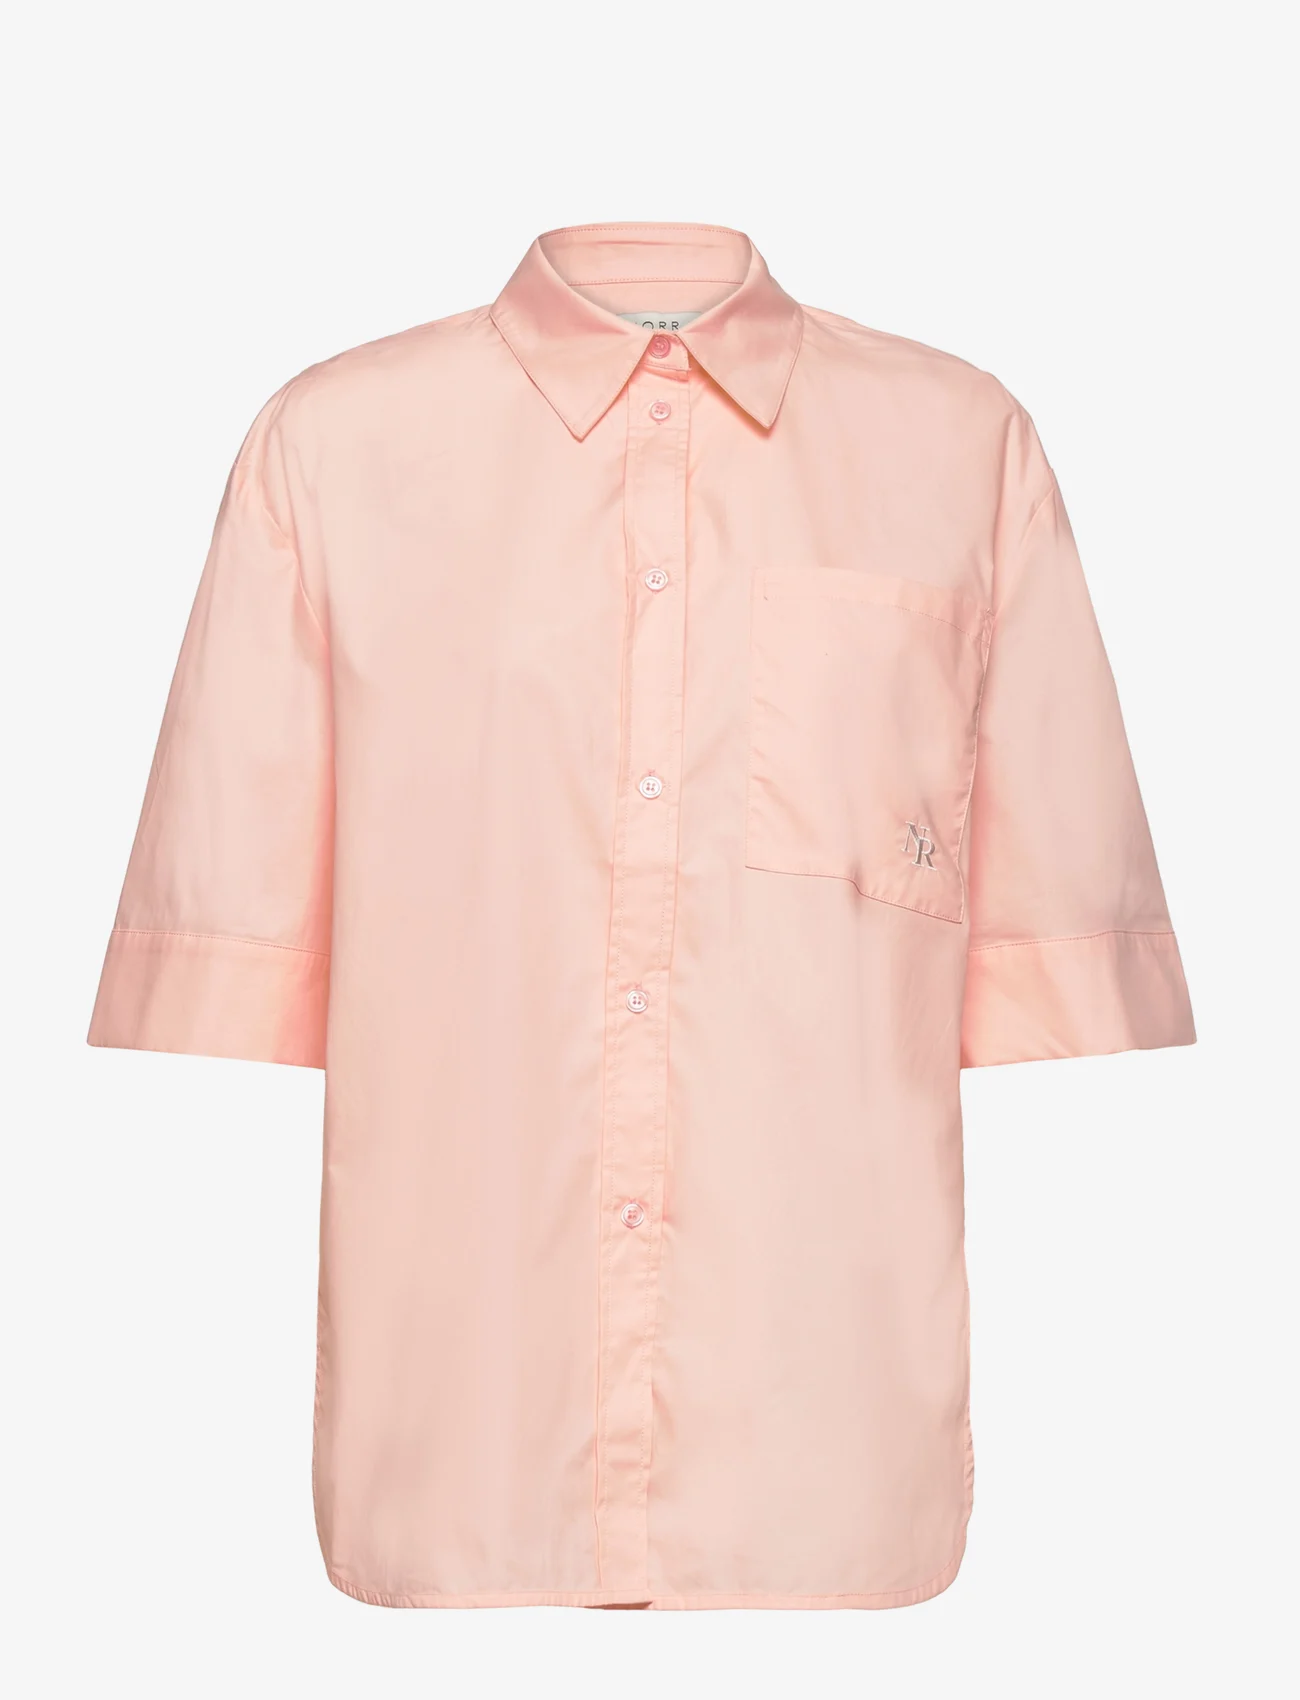 NORR - Adie SS shirt - lühikeste varrukatega särgid - light pink - 0